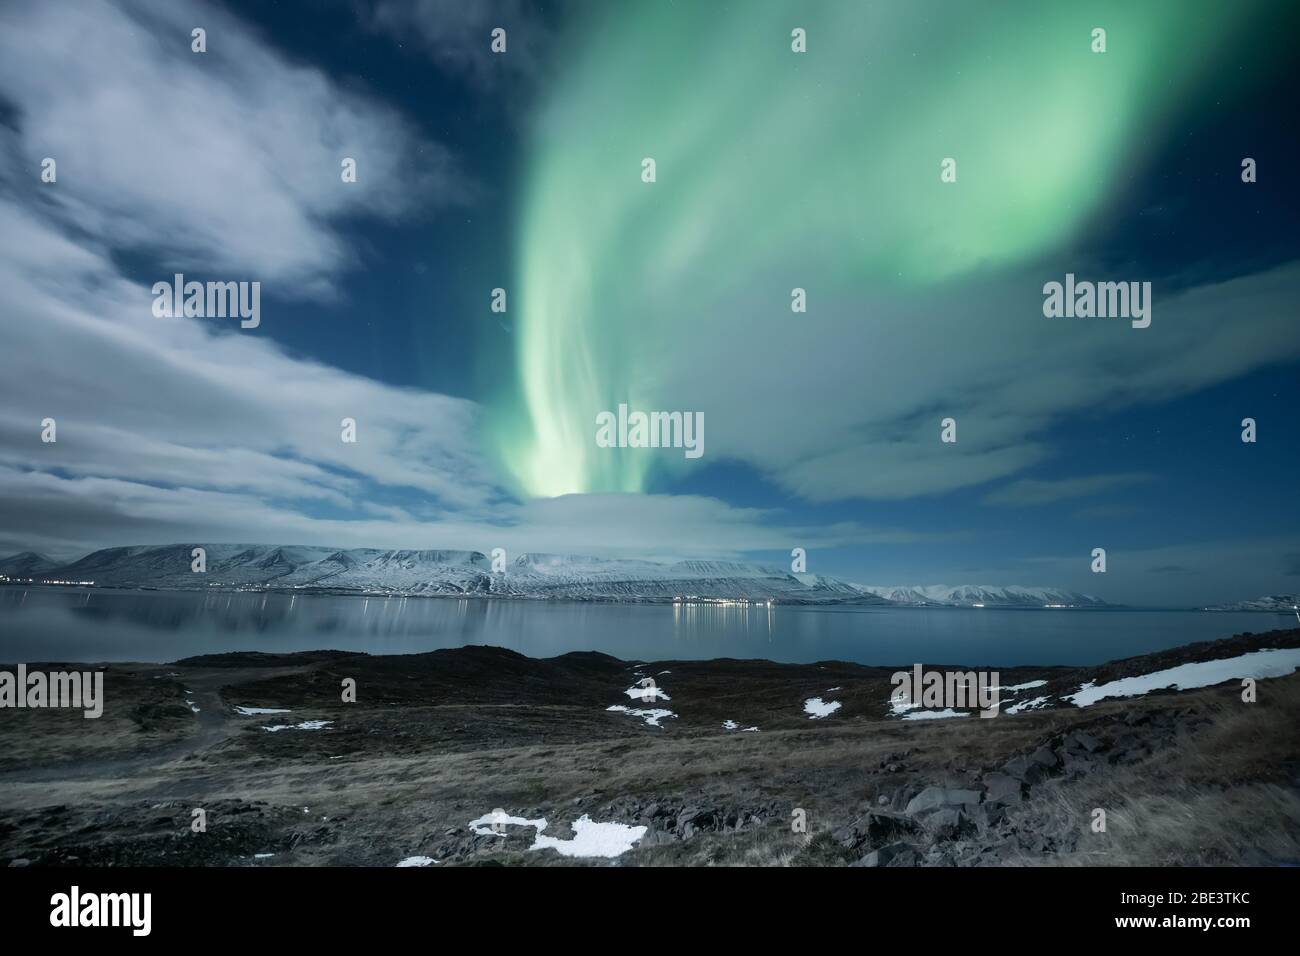 aurores boréales borealis au-dessus de la ville d'Akureyri en Islande Banque D'Images